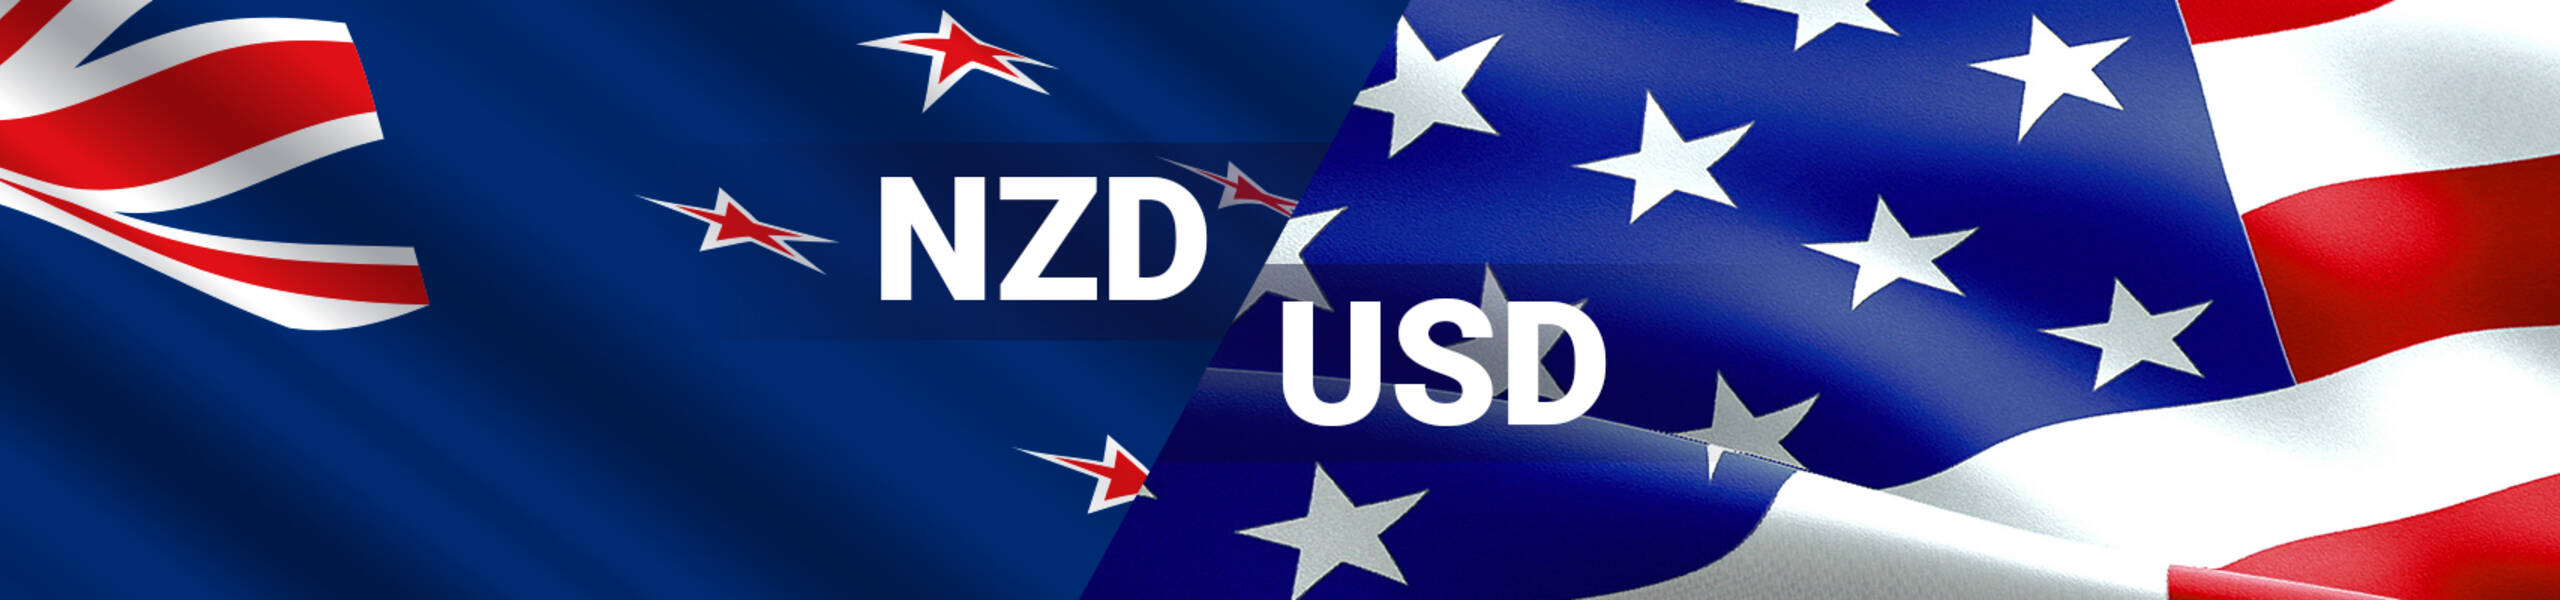 NZDUSD mencapai sokongan - Analysis - 26-04-2017